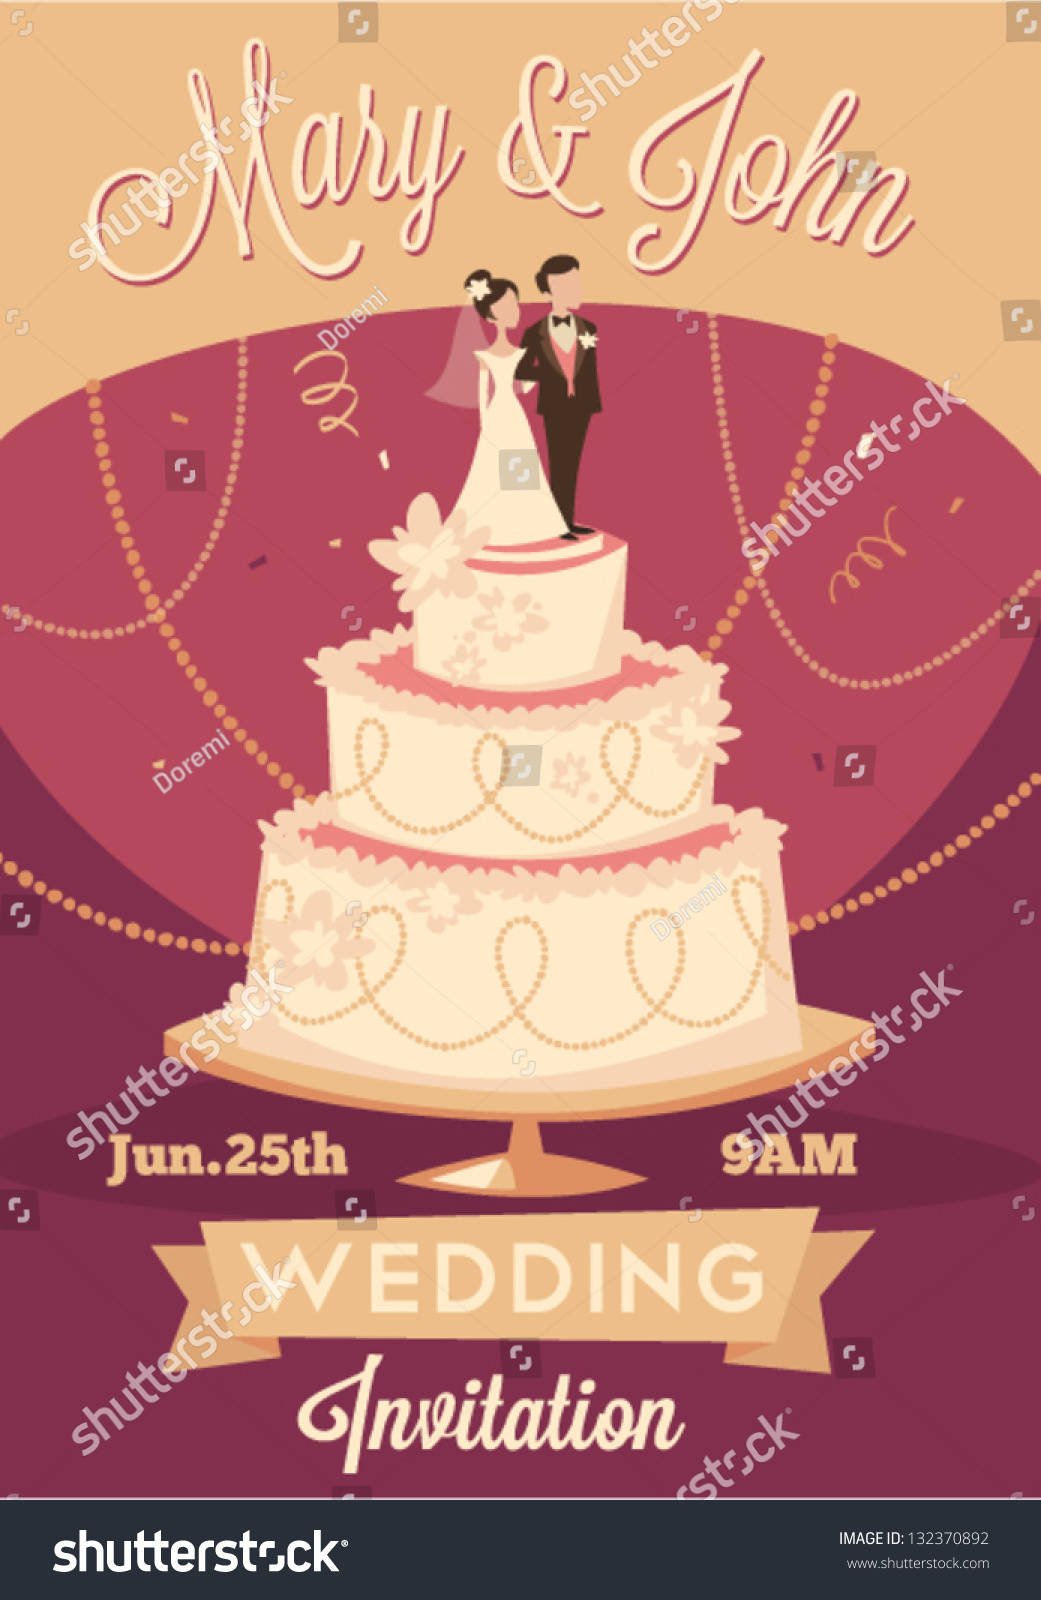 Wedding Invitation Stock Vector Illustration 132370892 : Shutterstock